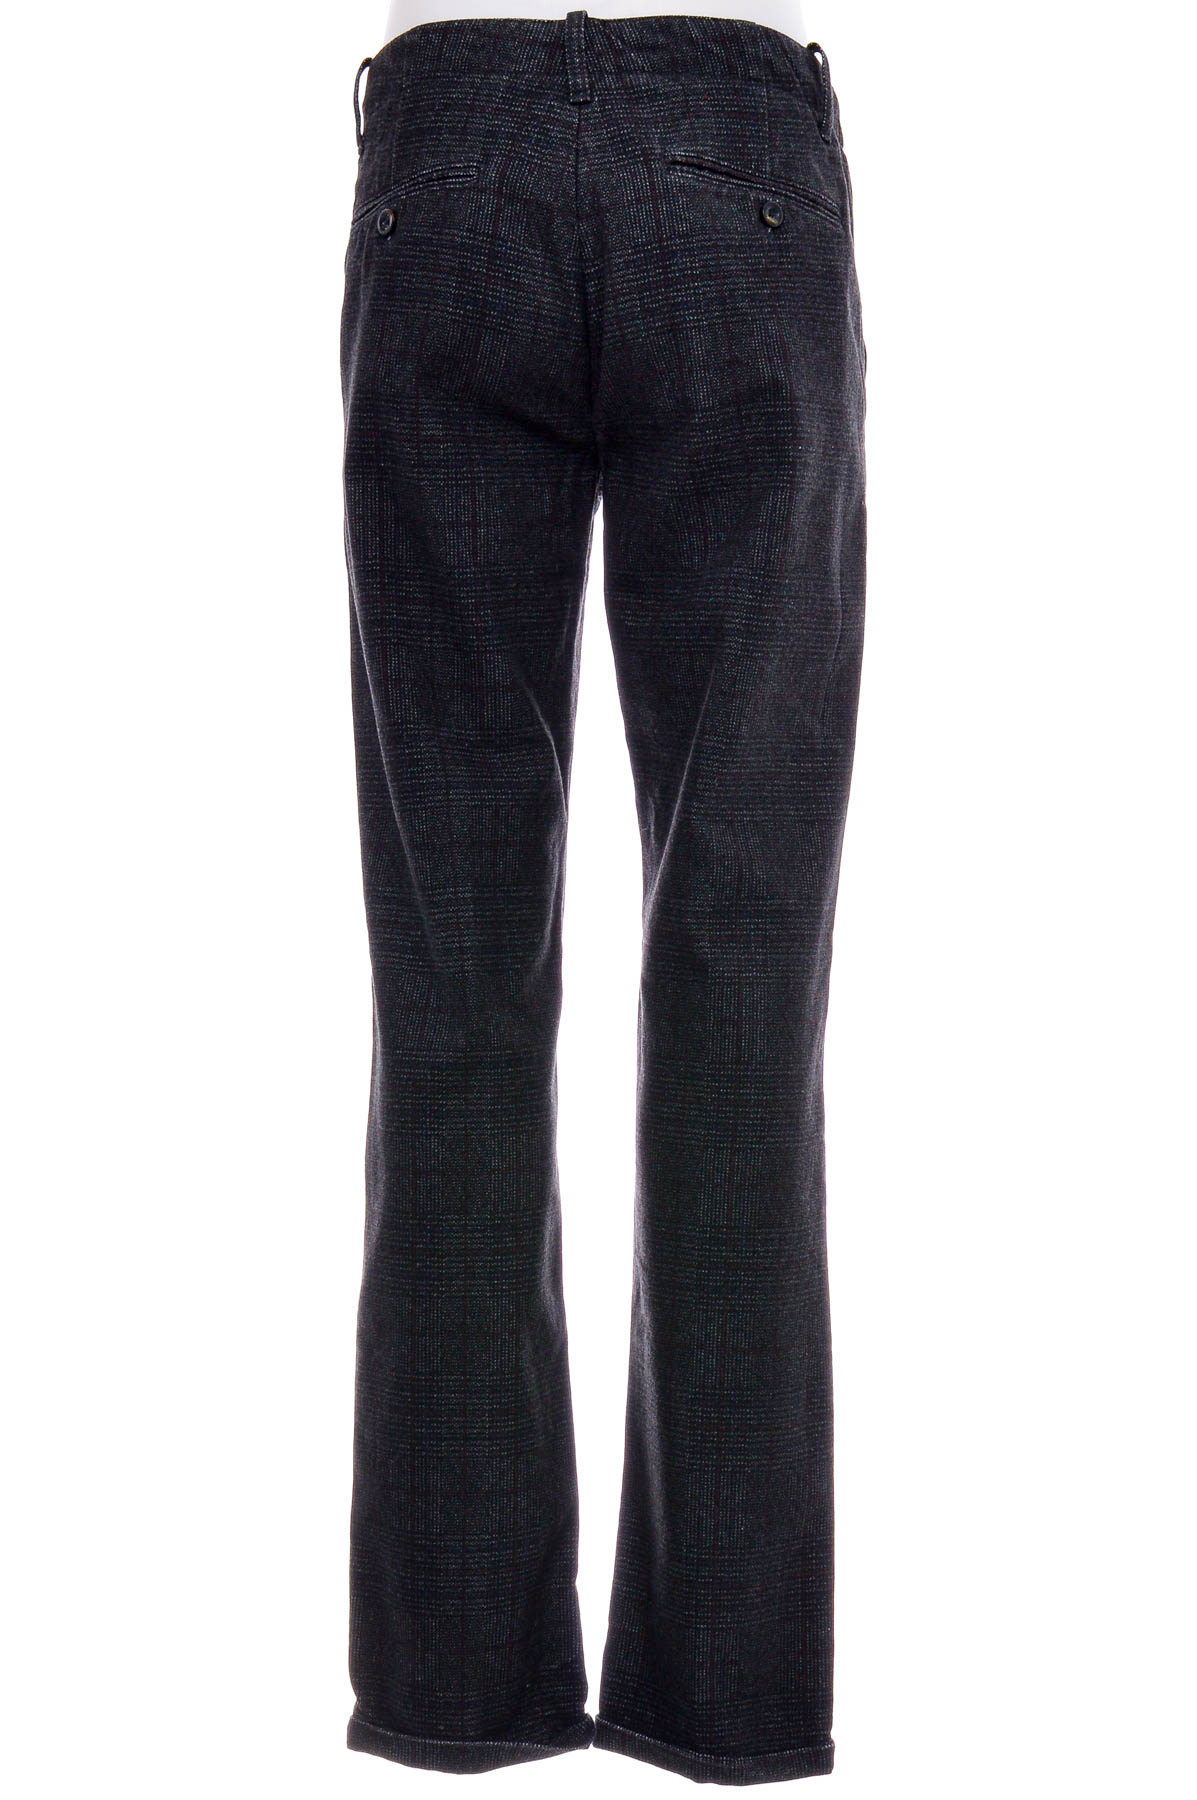 Men's trousers - Conbipel - 1